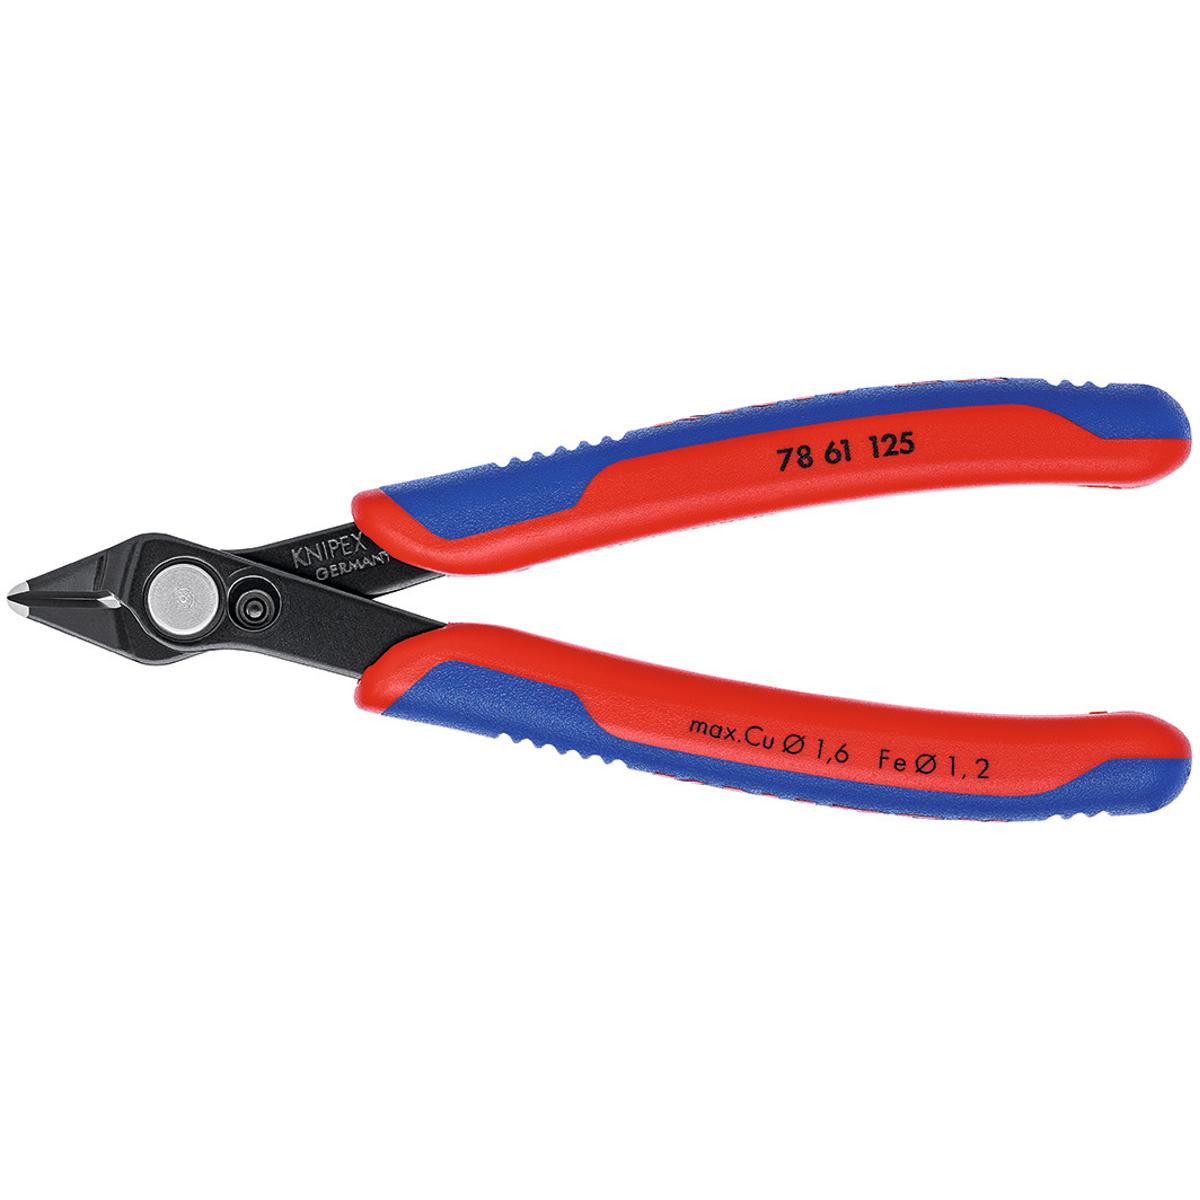 KỀM CẮT LINH KIỆN ĐIỆN TỬ KNIPEX SUPER KNIPS® 125MM 78 61 125